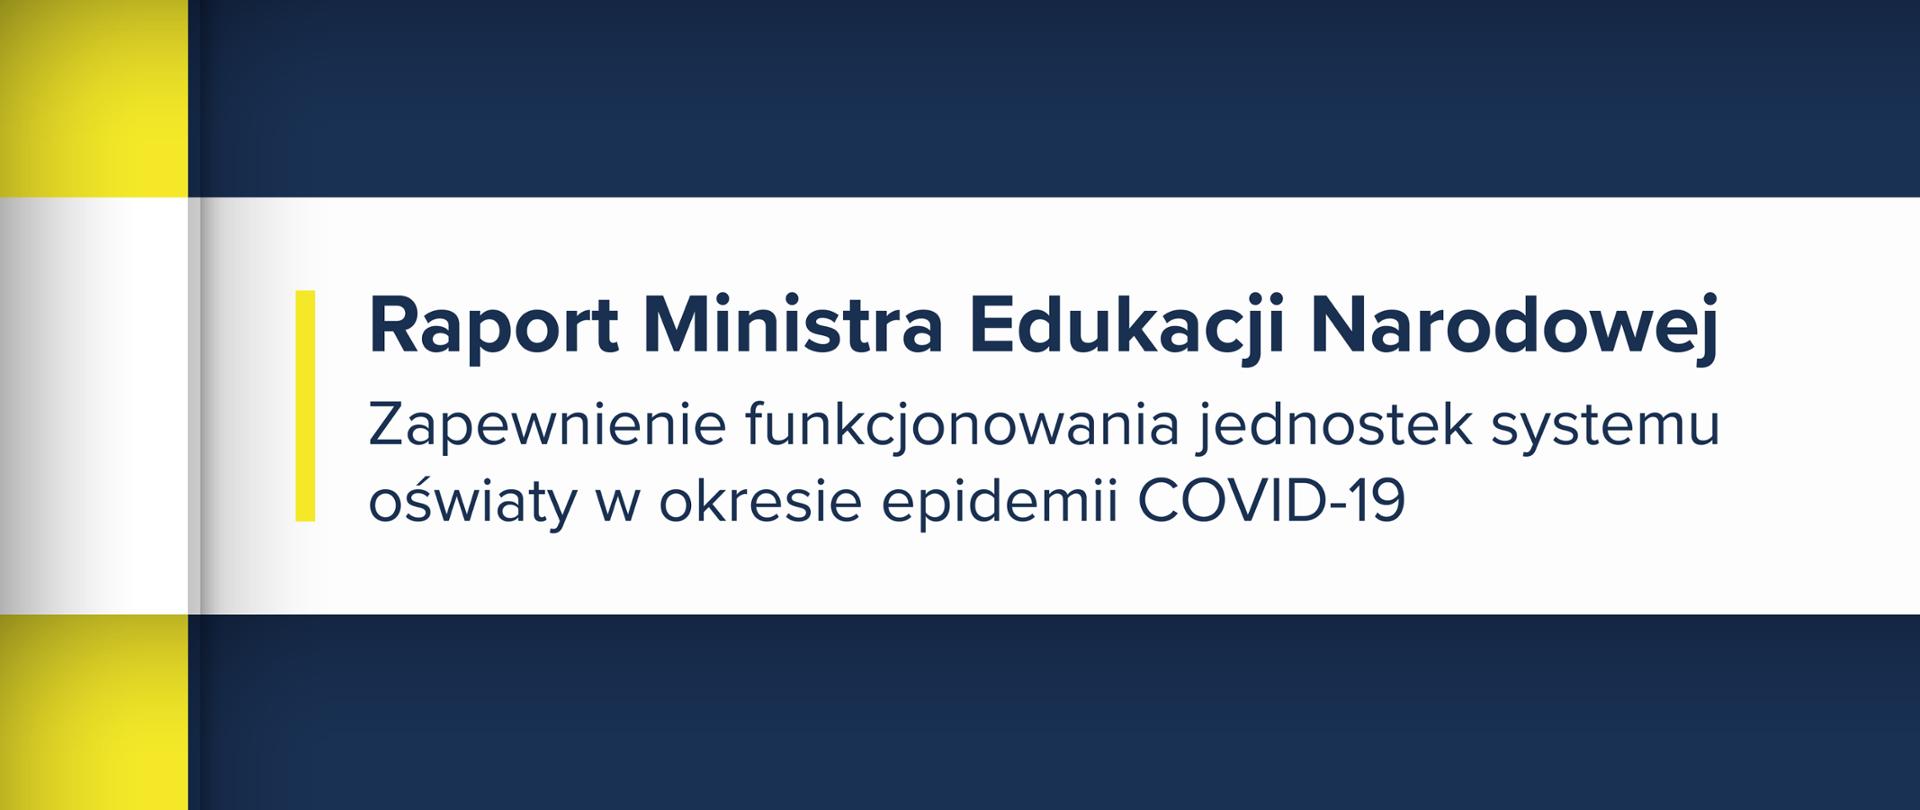 Granatowo-żółta grafika z tekstem: "Raport Ministra Edukacji Narodowej. Zapewnienie funkcjonowania jednostek systemu oświaty w okresie epidemii COVID-19"